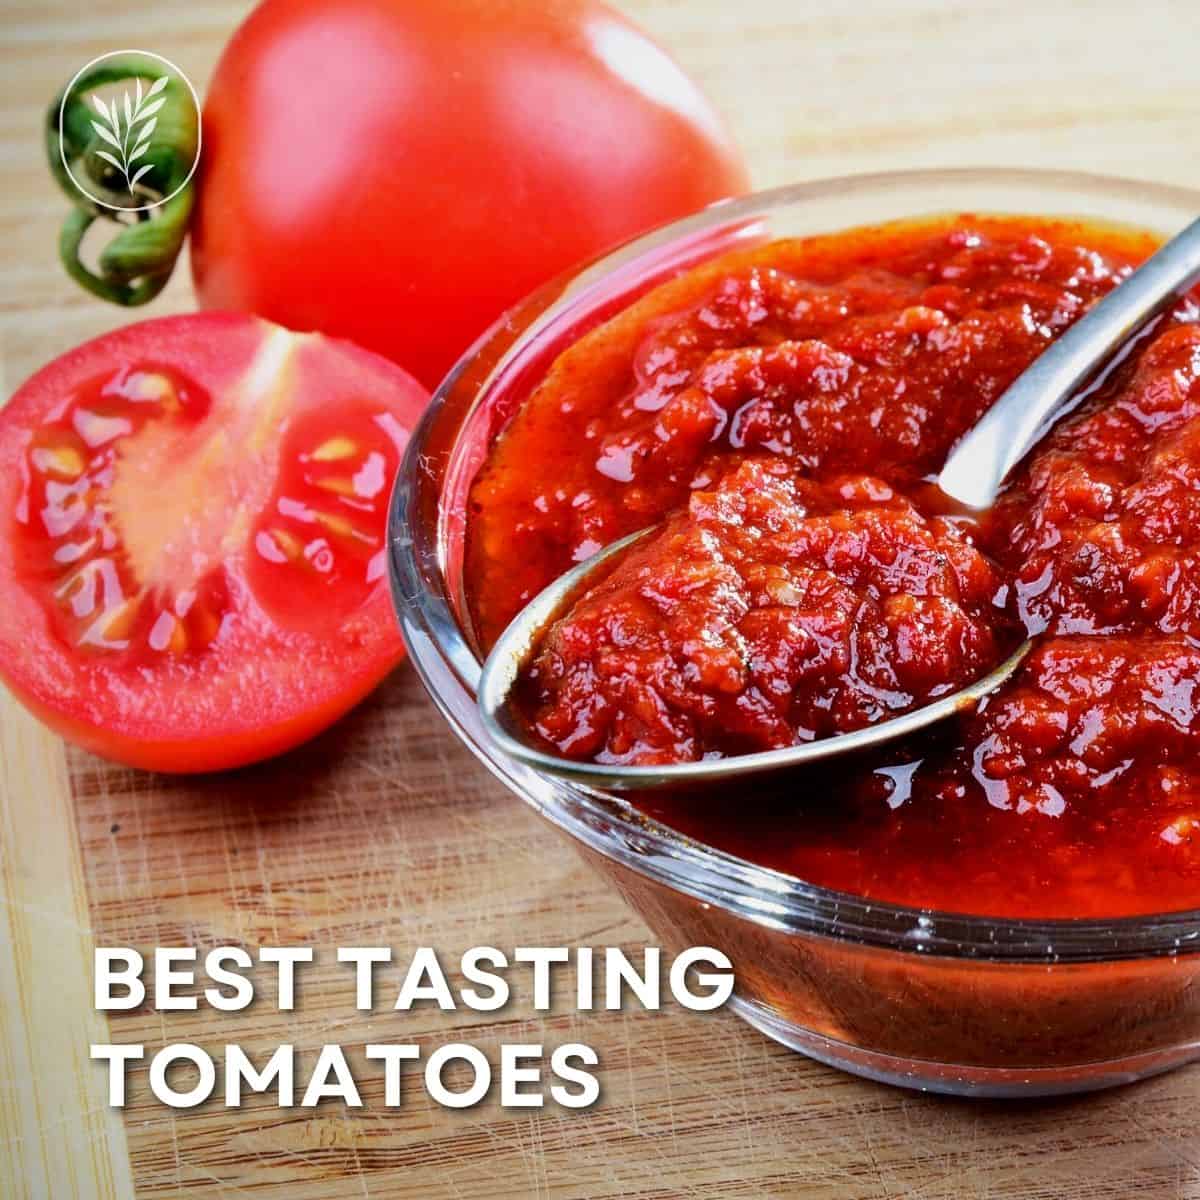 Best tasting tomatoes via @home4theharvest